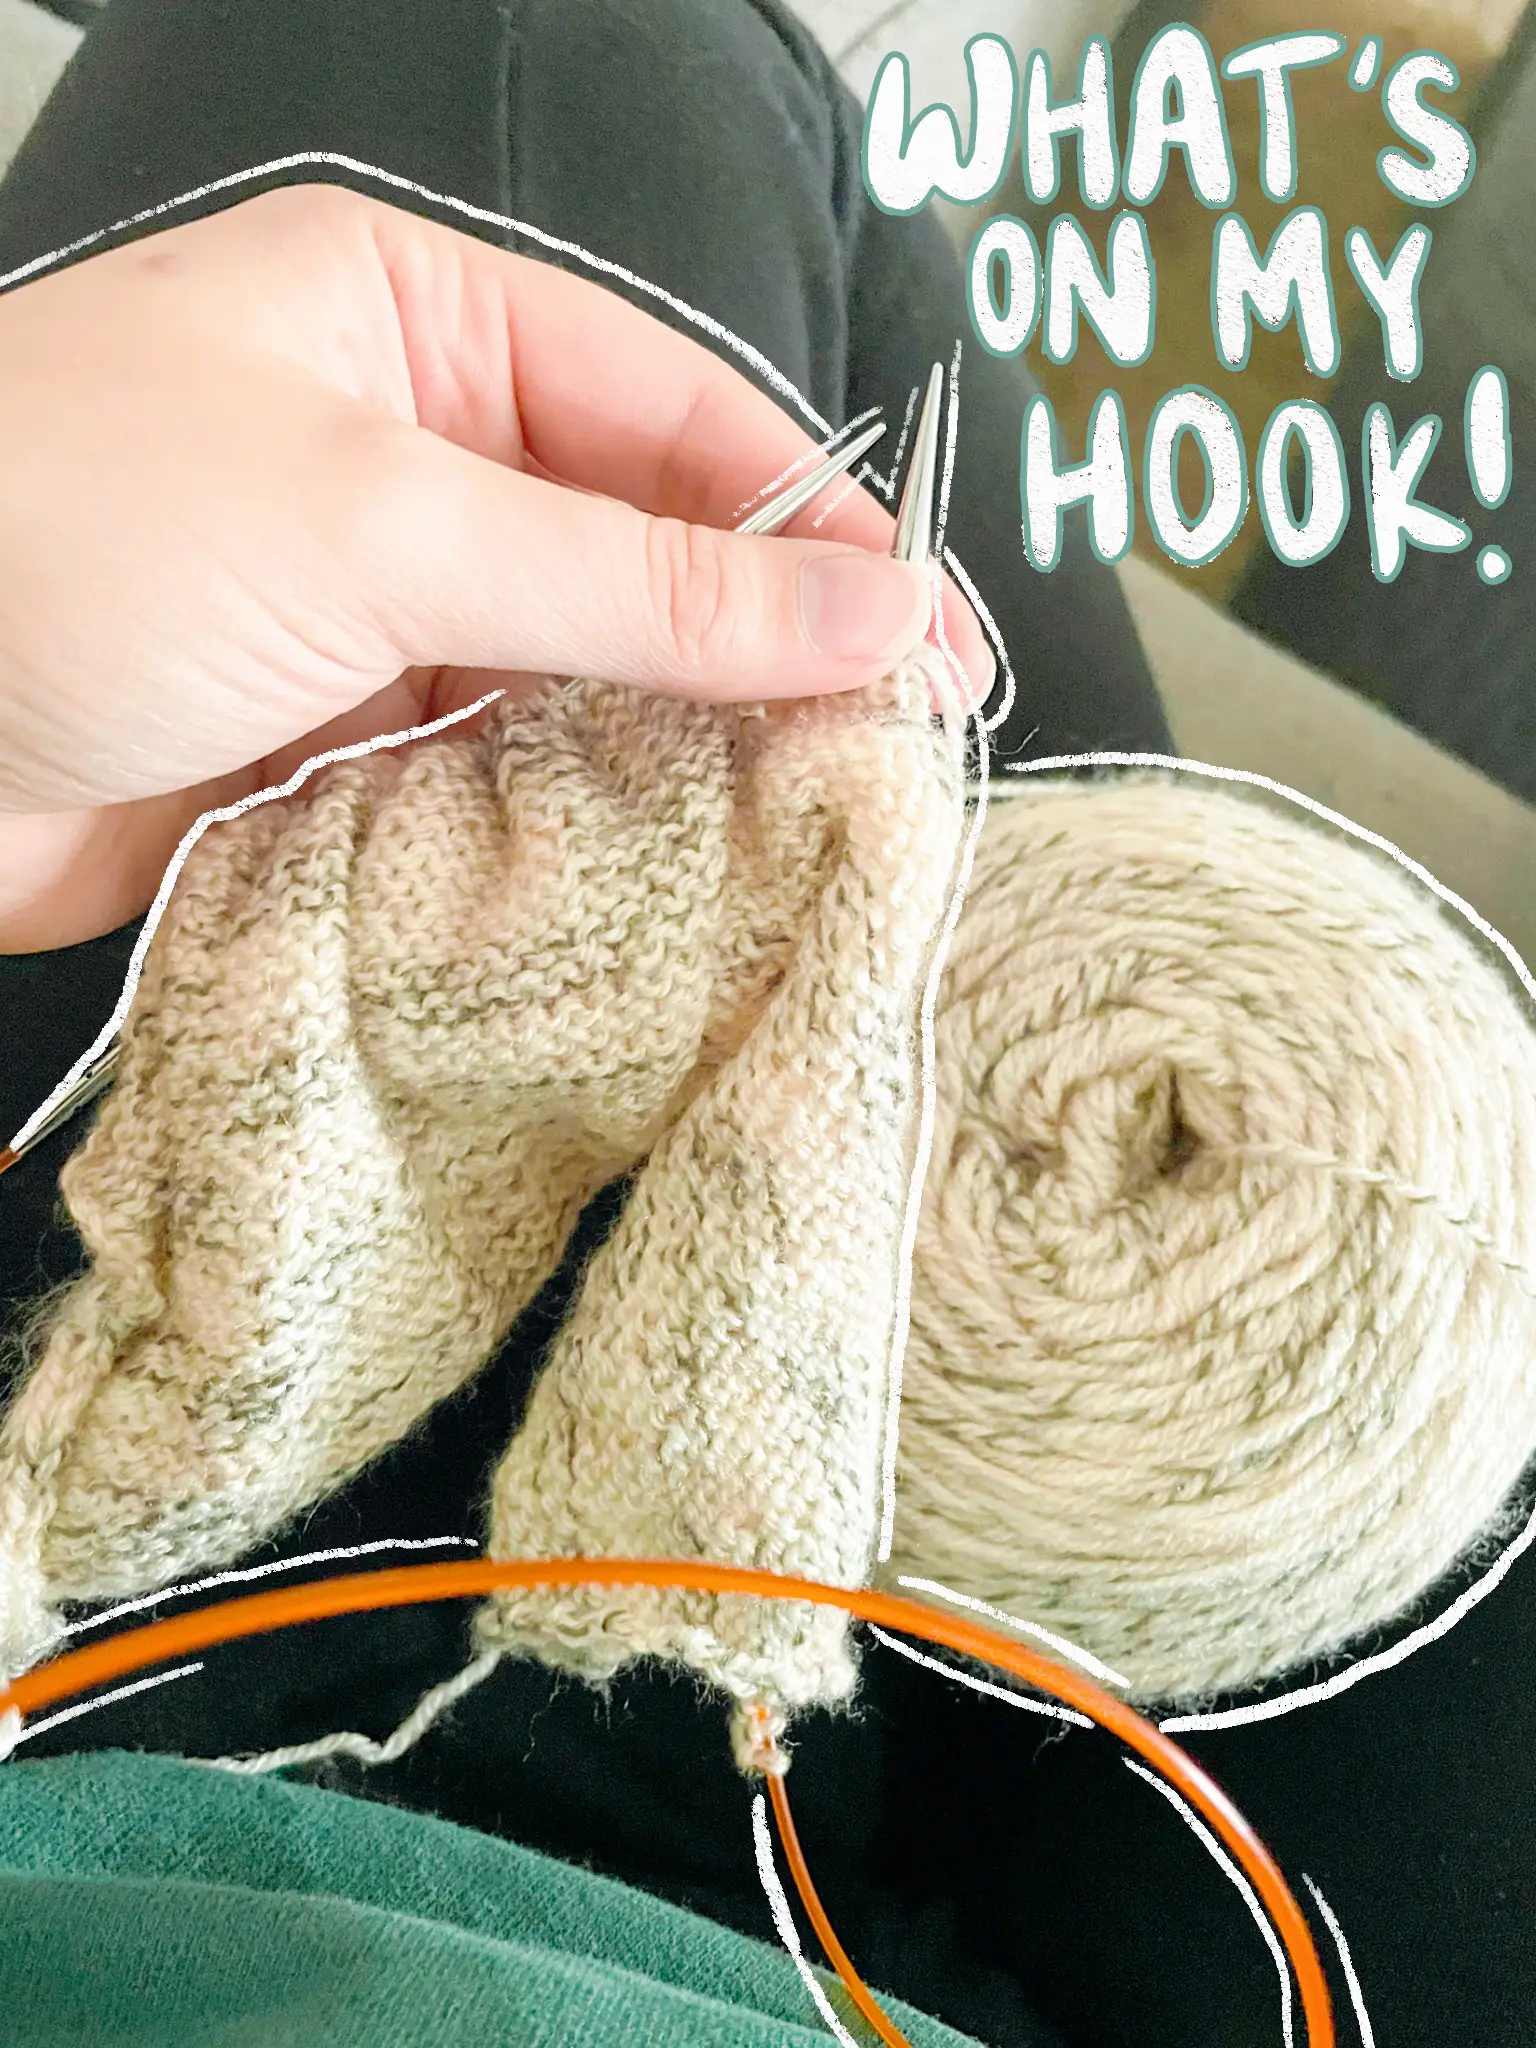 H Hook Crocheting Technique - Lemon8 Search